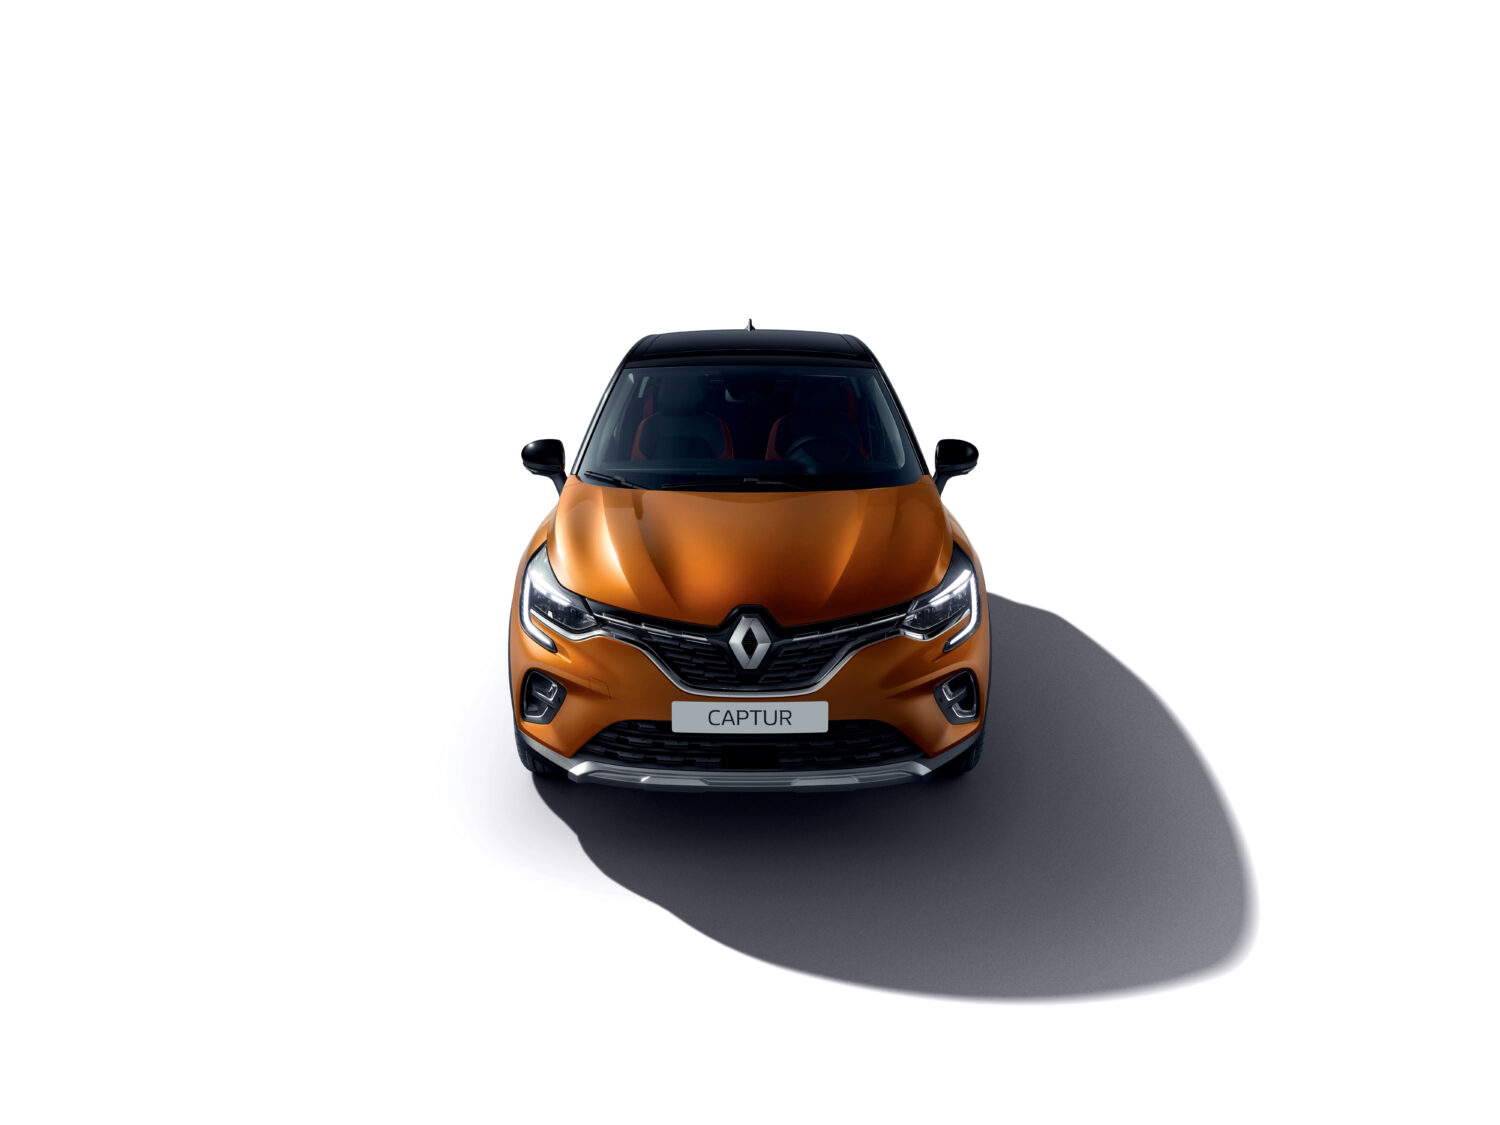 2019 - New Renault CAPTUR